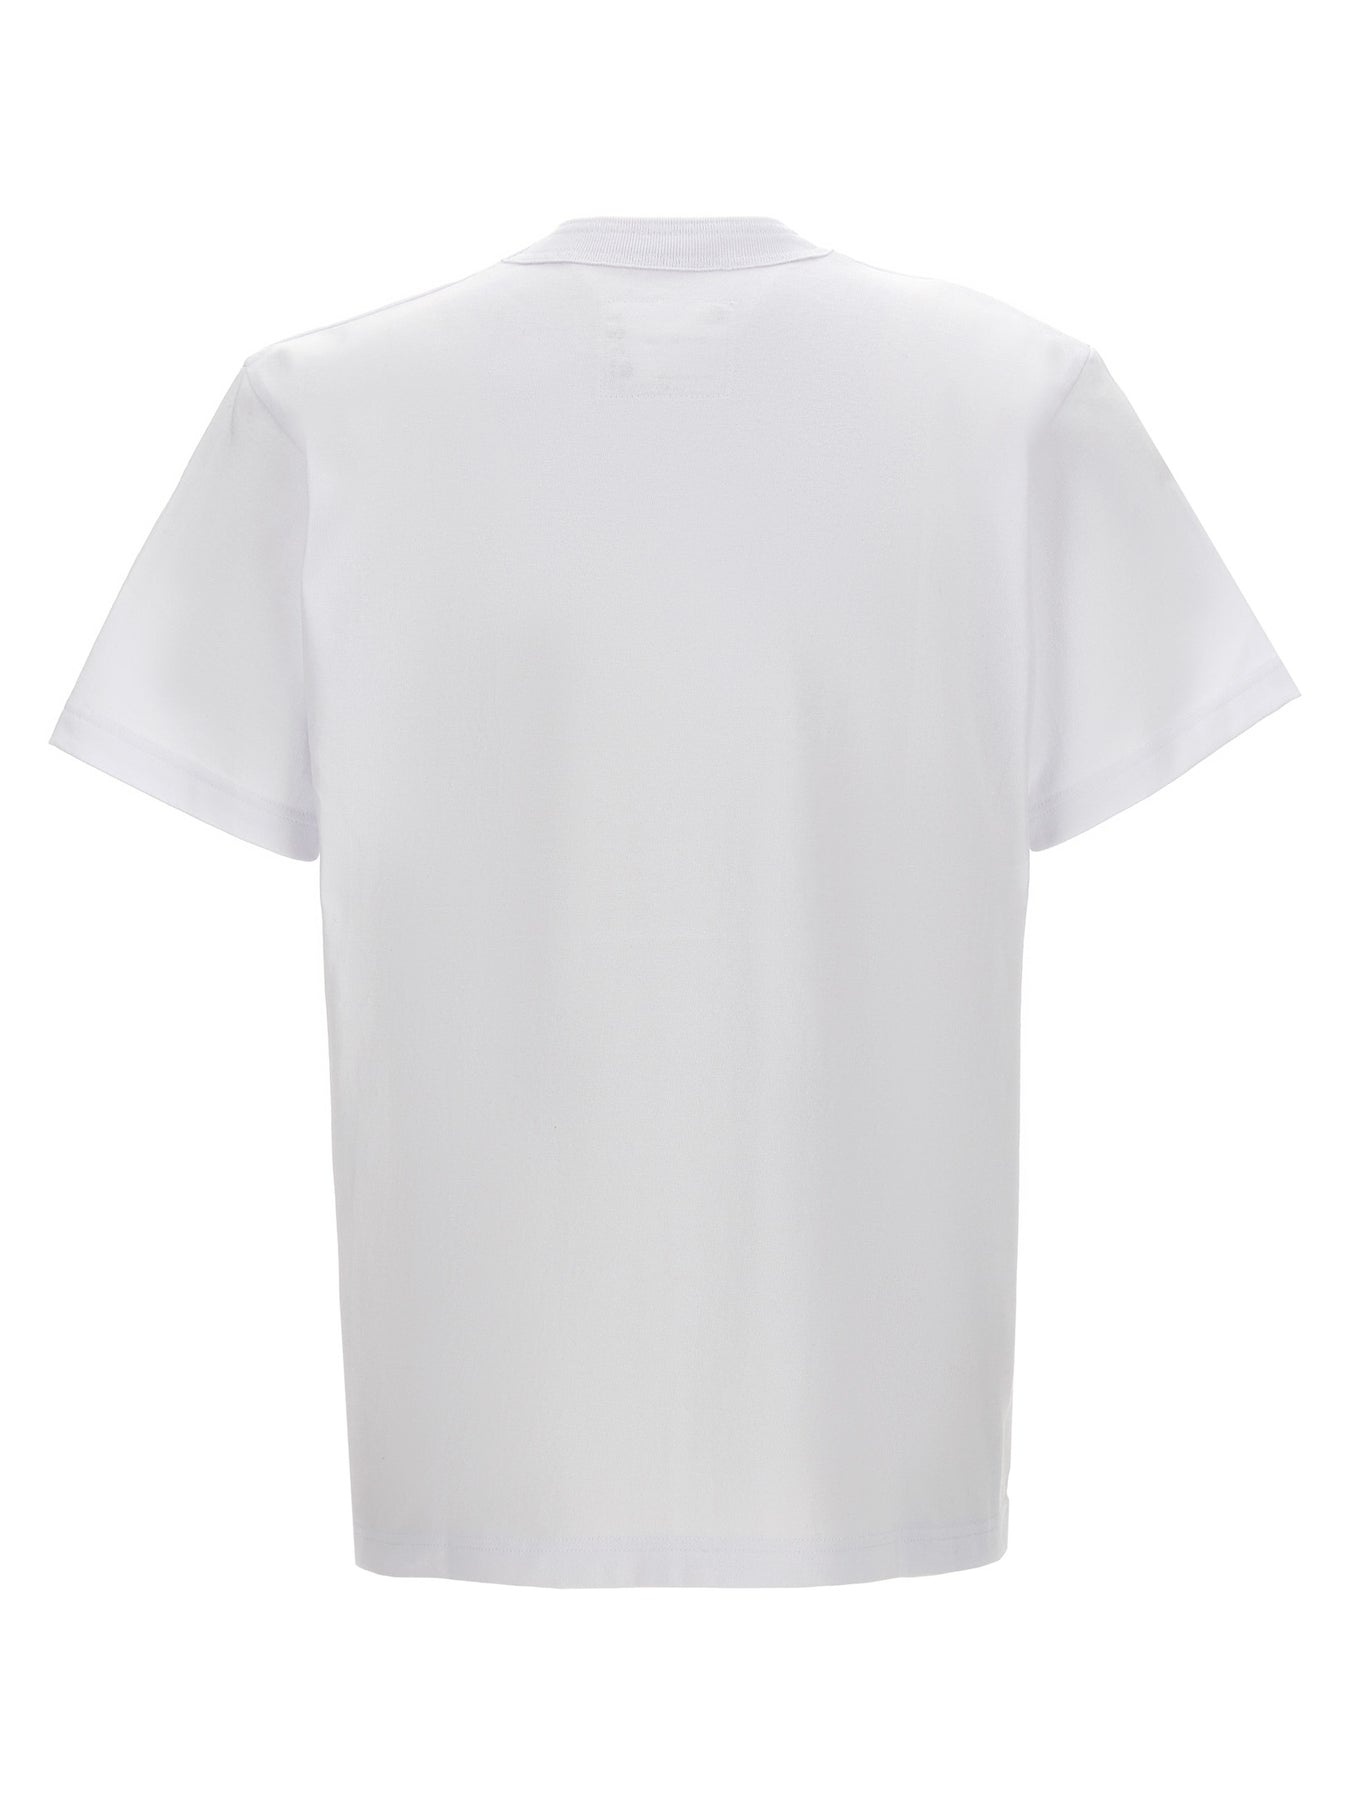 Sacai X Carhartt Wip T-Shirt White - 2